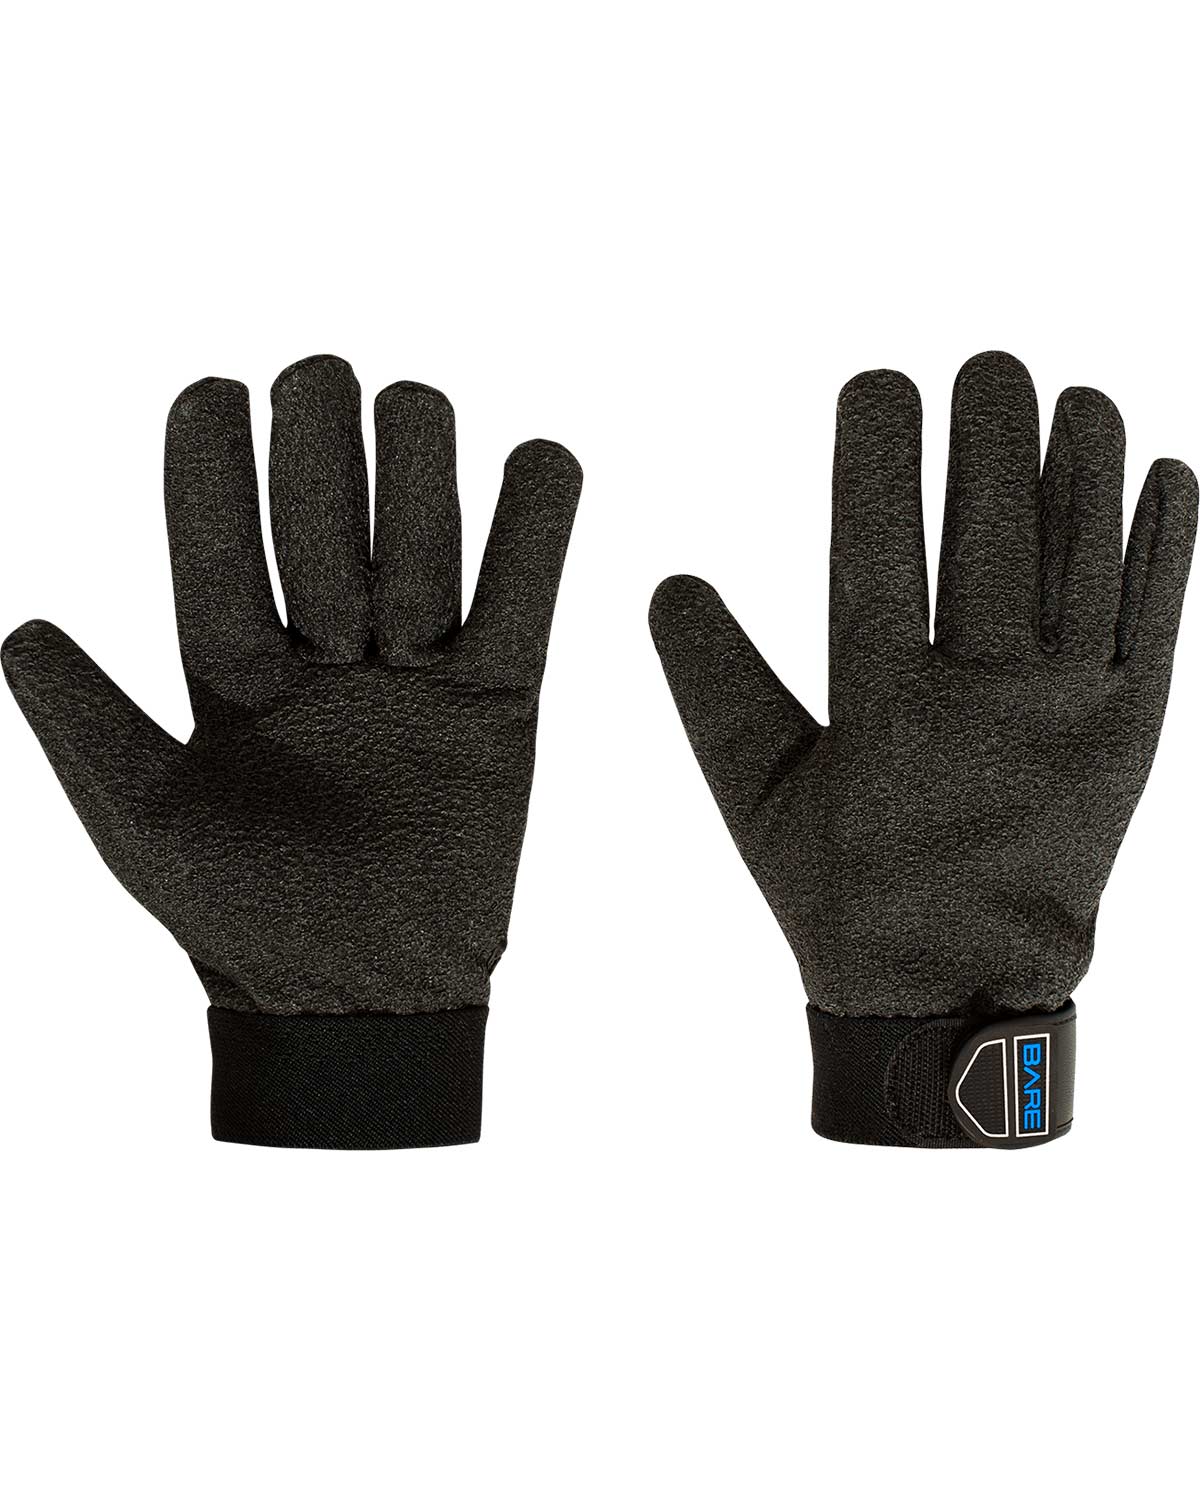 BARE K-GLOVE Wetsuit Gloves